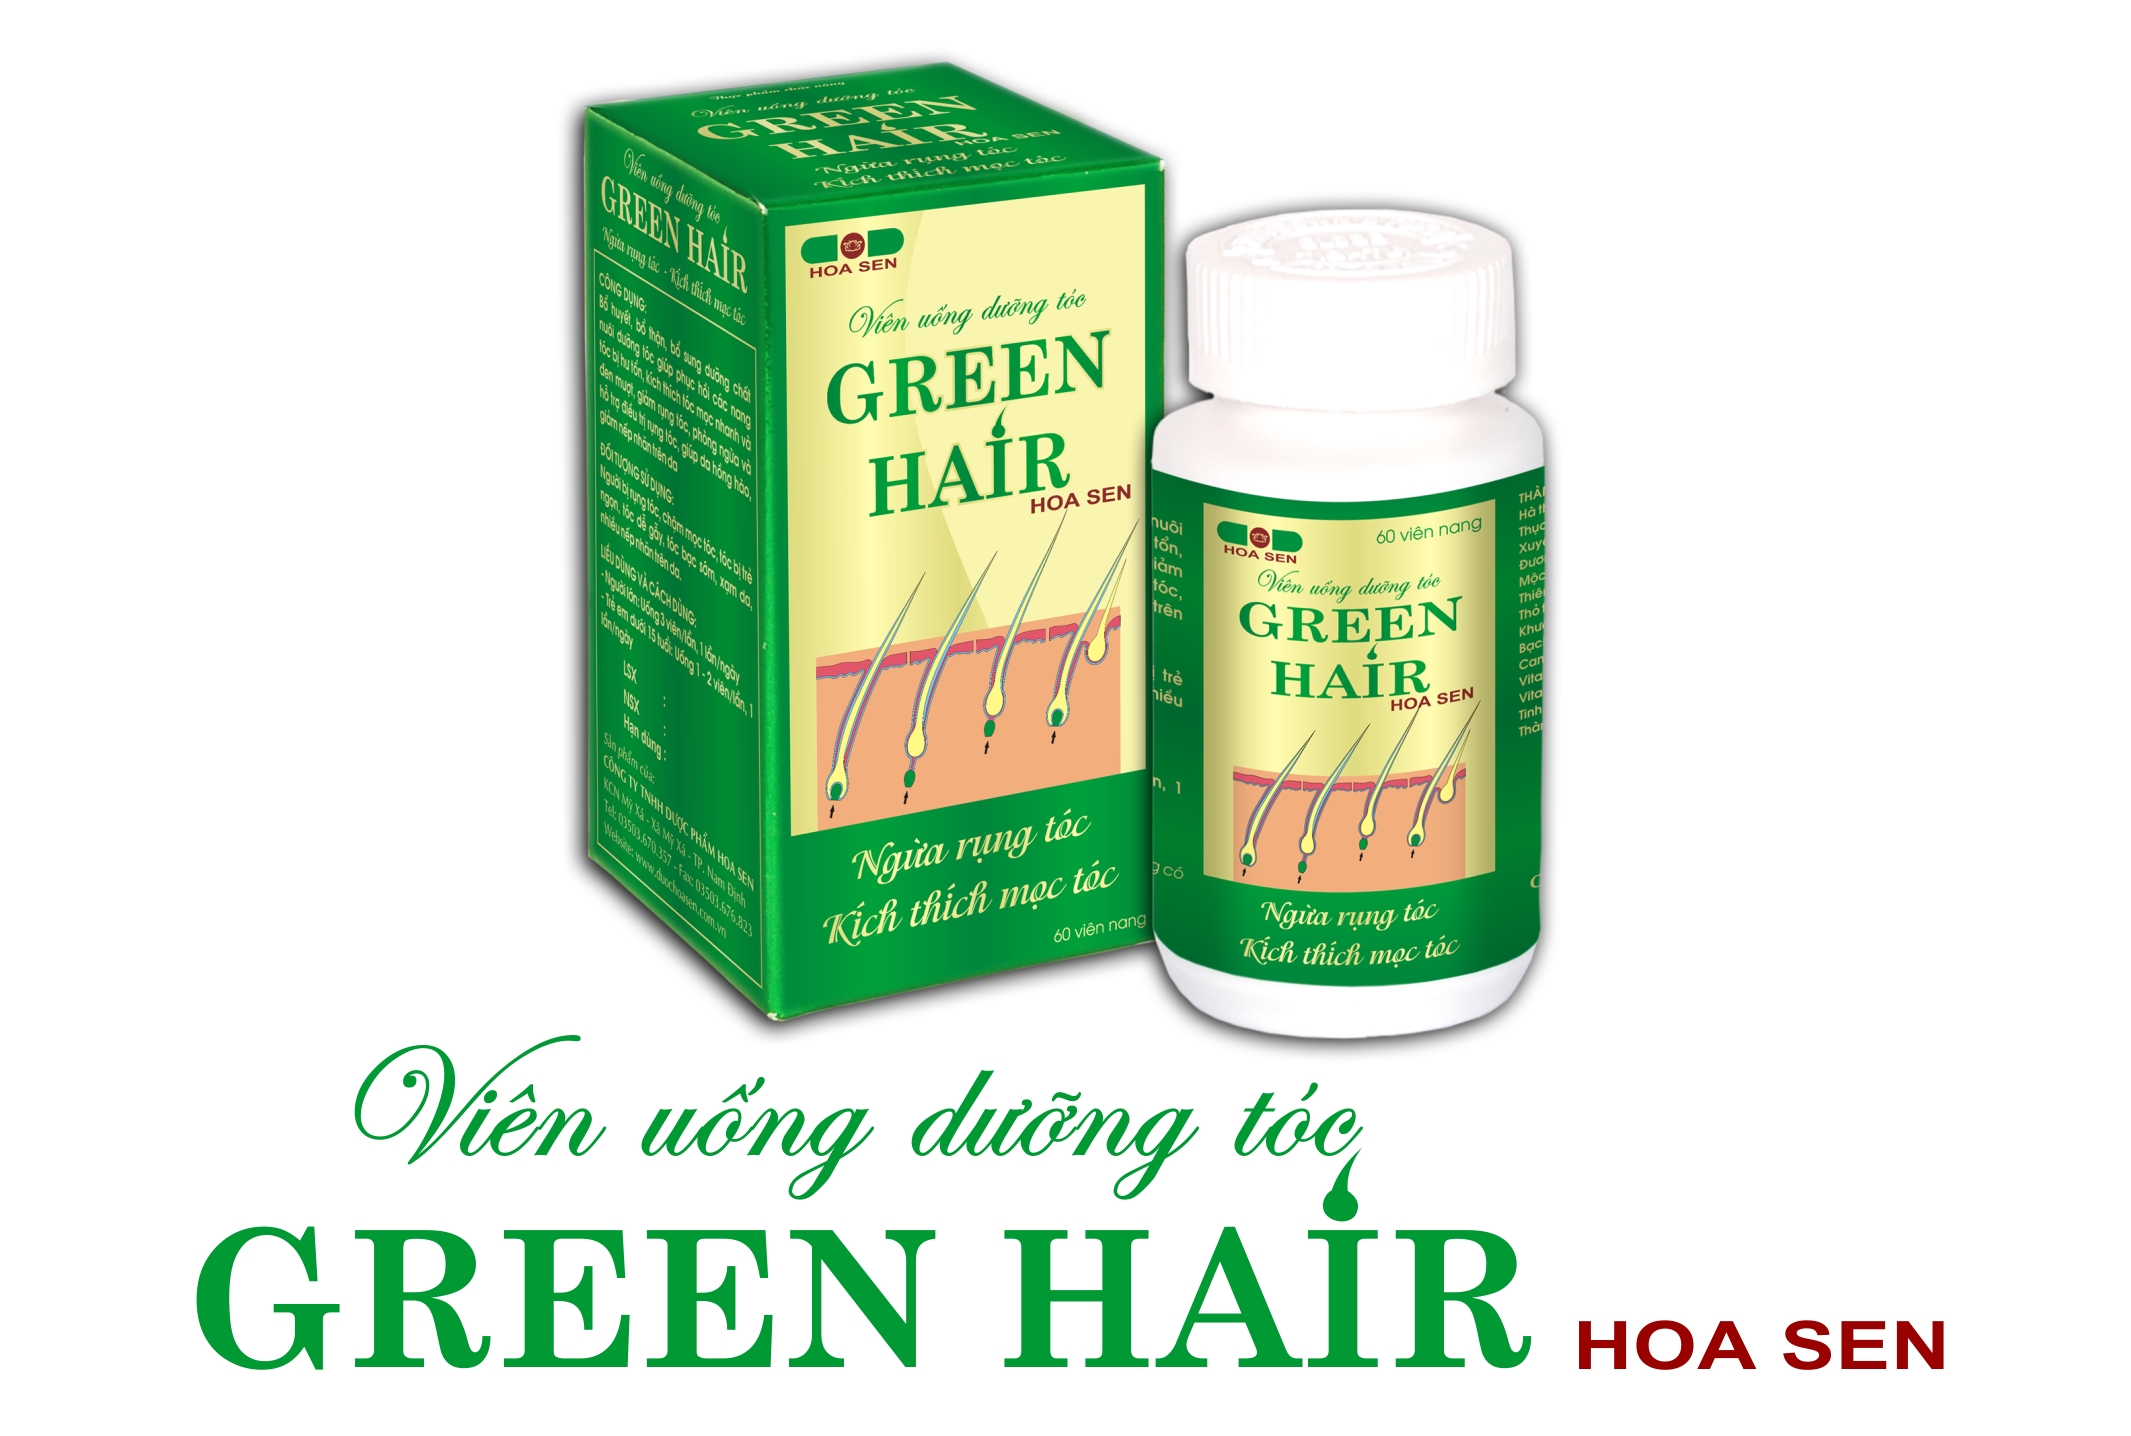 Phụ nữ sau sinh bị rụng tóc có dùng Green Hair được không?